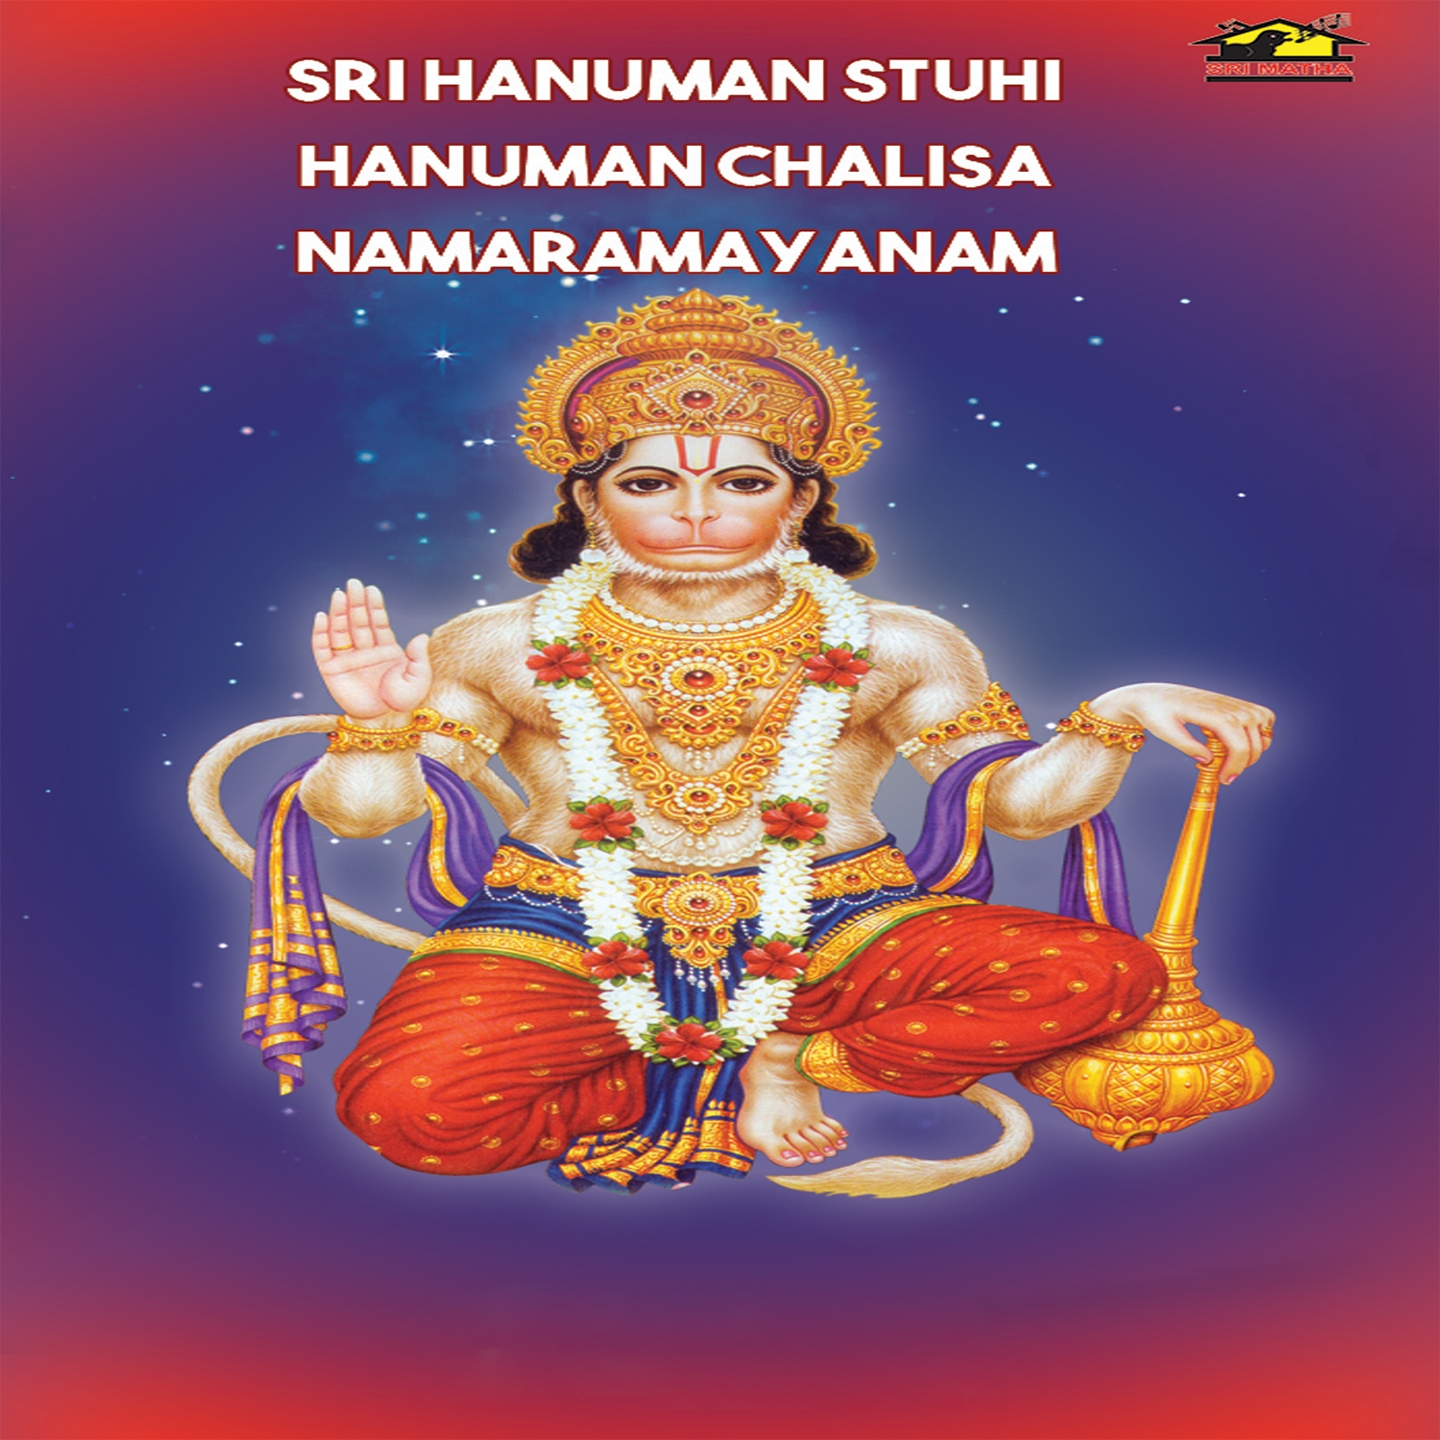 Nama ramayanam lyrics in english